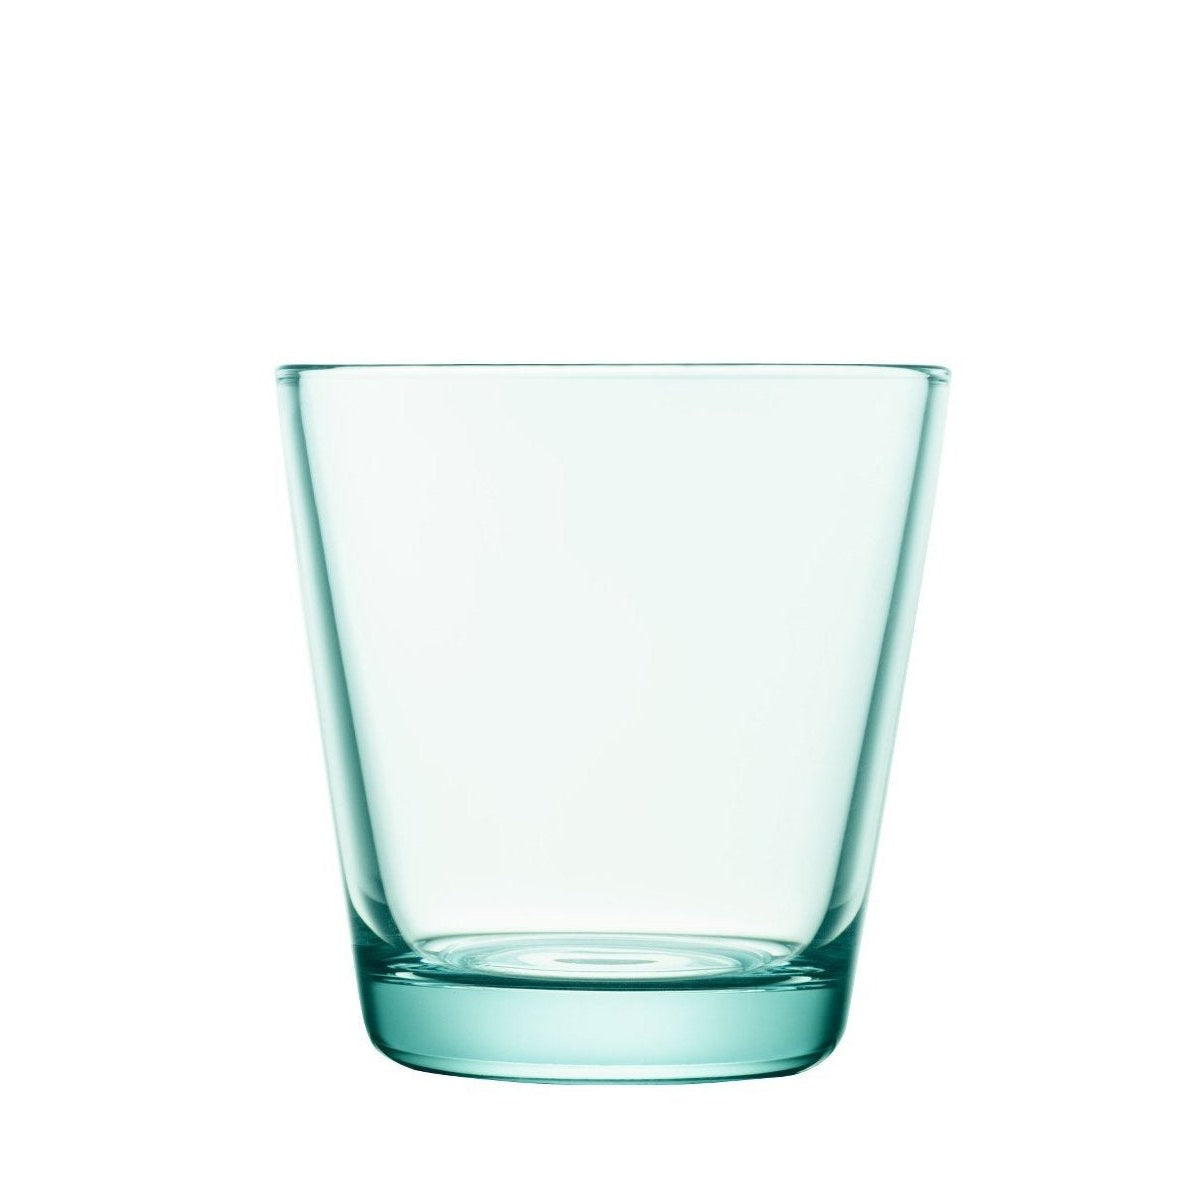 Iittala Kartio Glas Wasser Grün 2pcs, 21cl